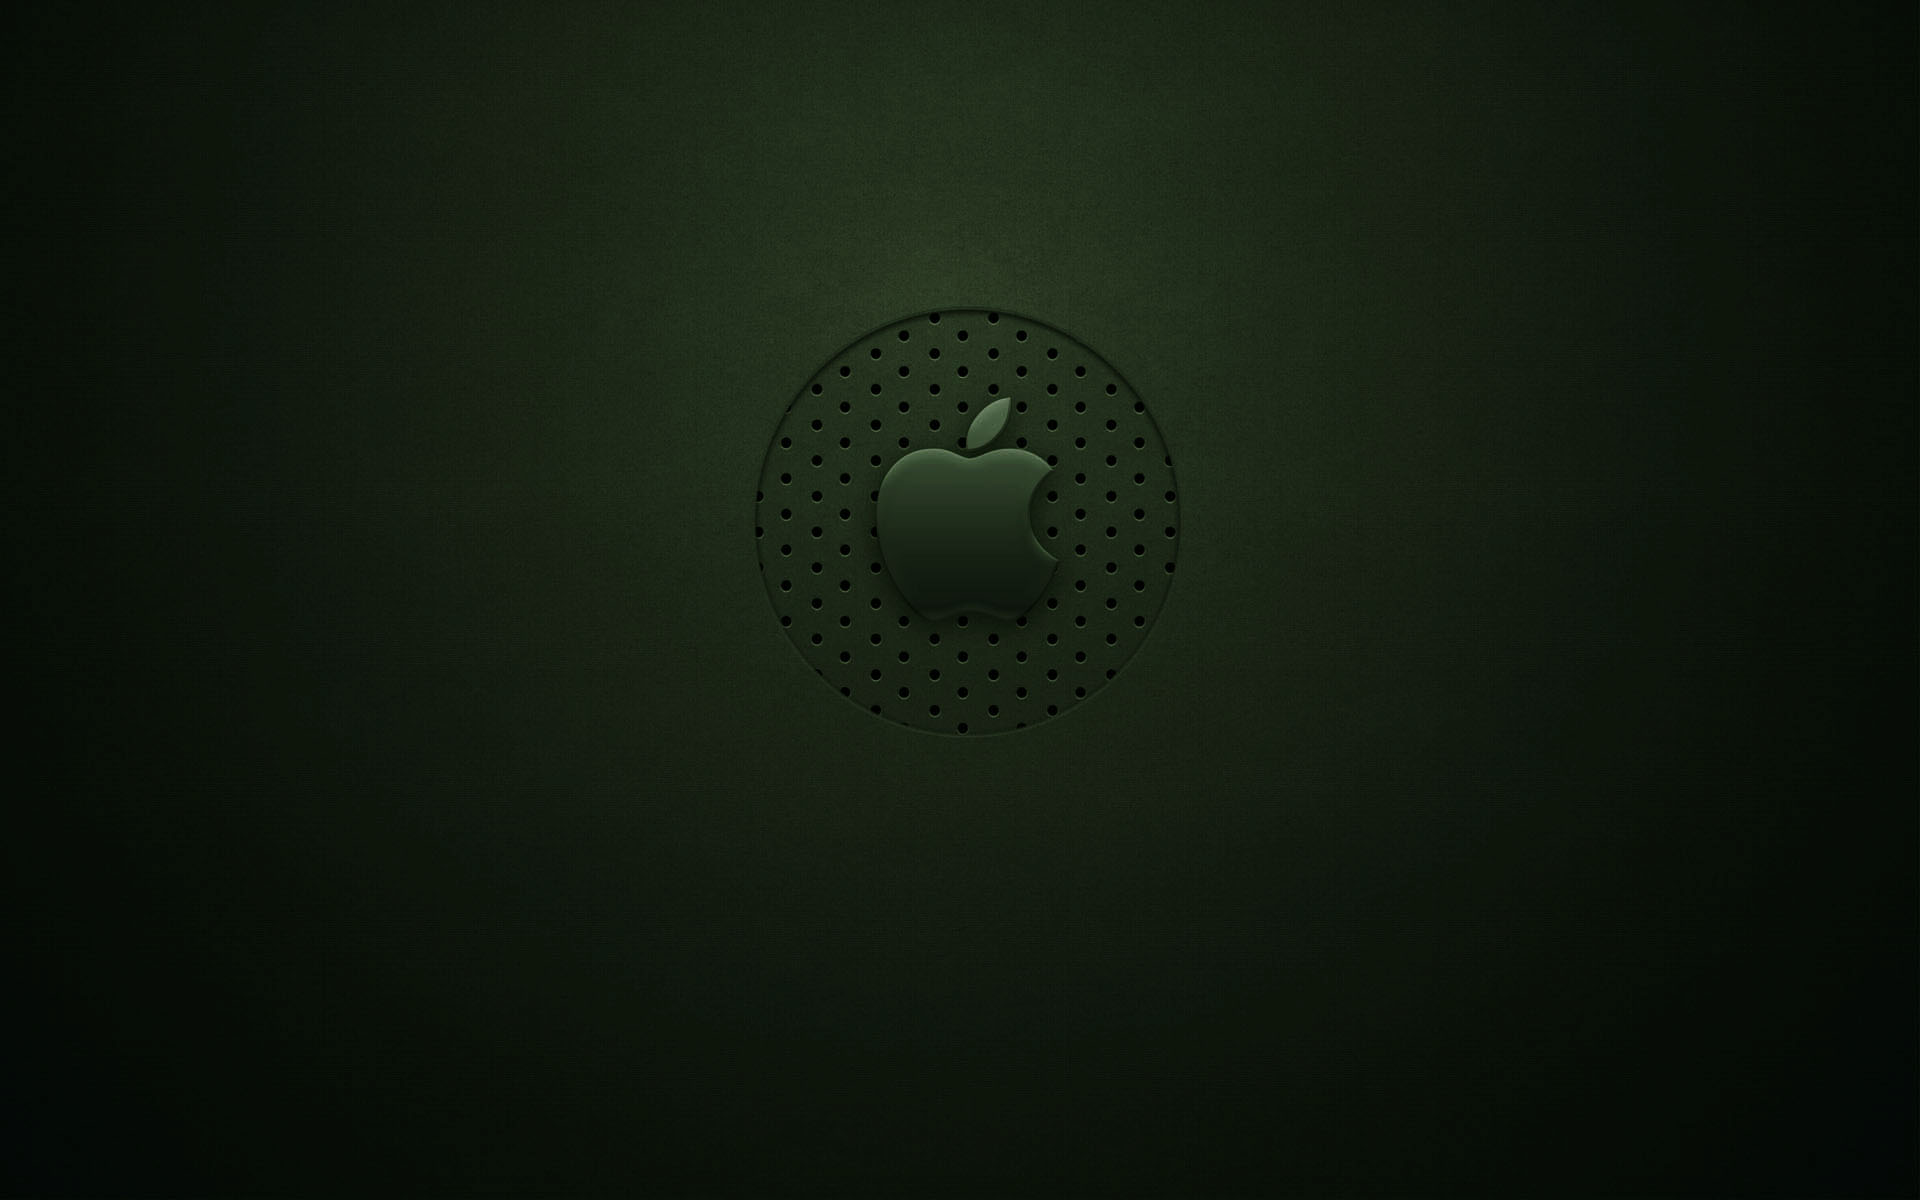 Green Apple Logo Wallpaper Stock Photos